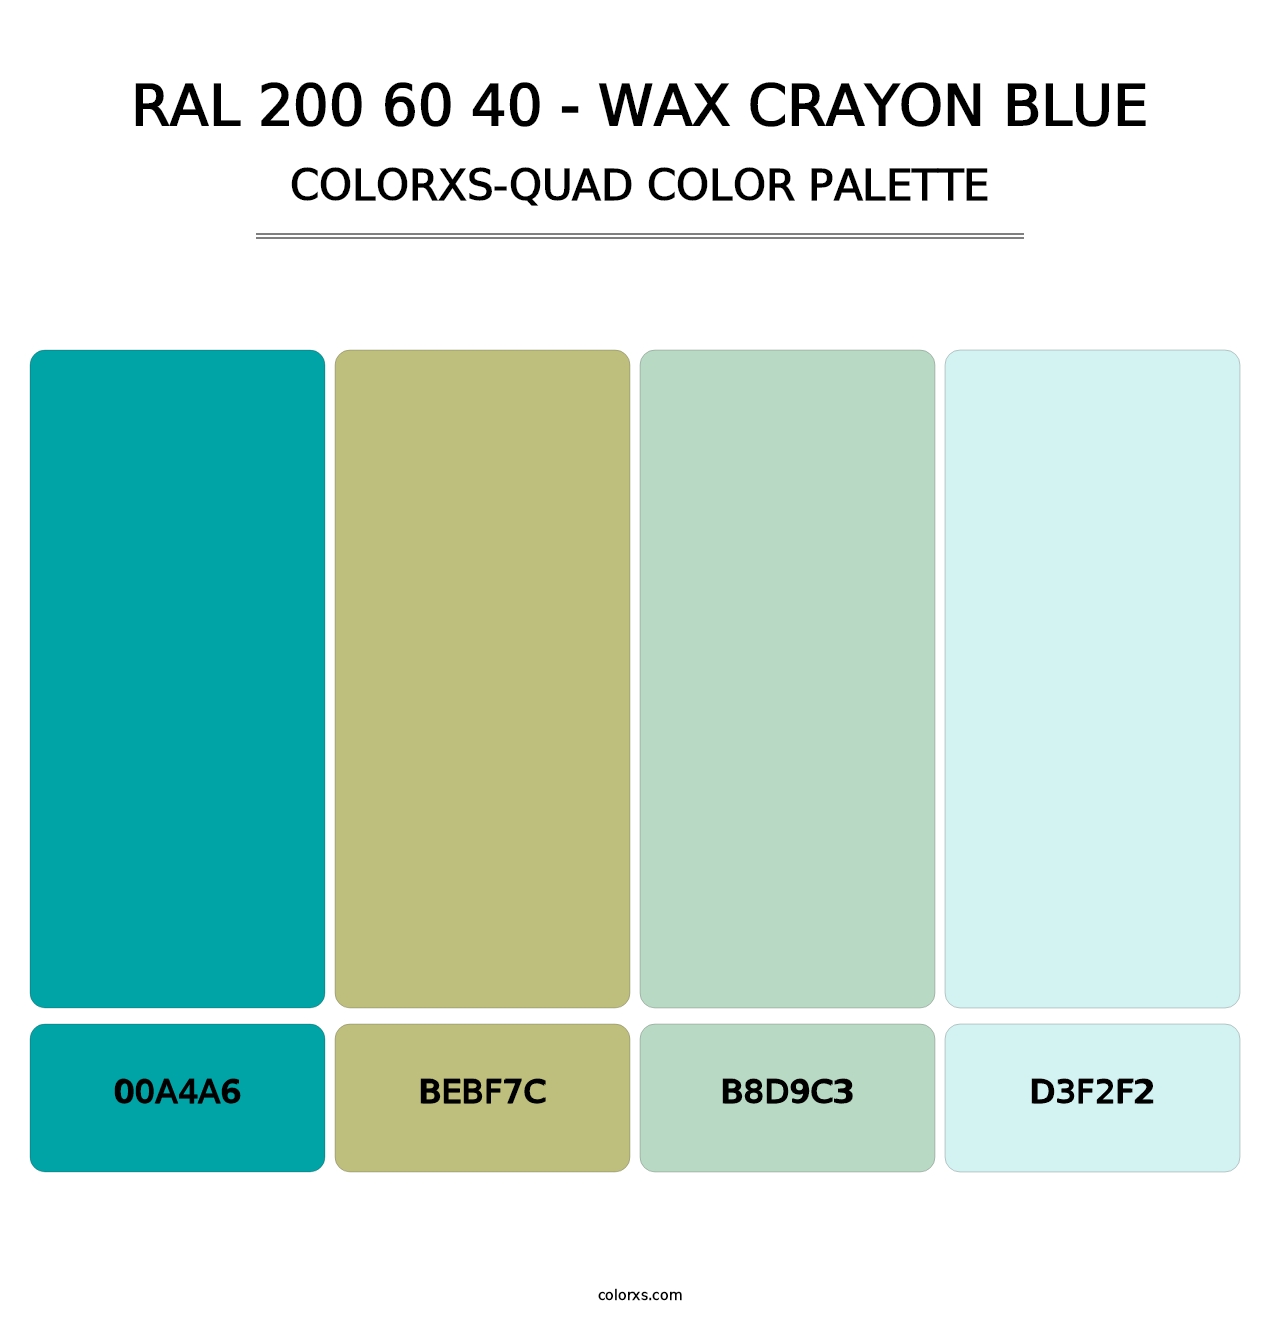 RAL 200 60 40 - Wax Crayon Blue - Colorxs Quad Palette